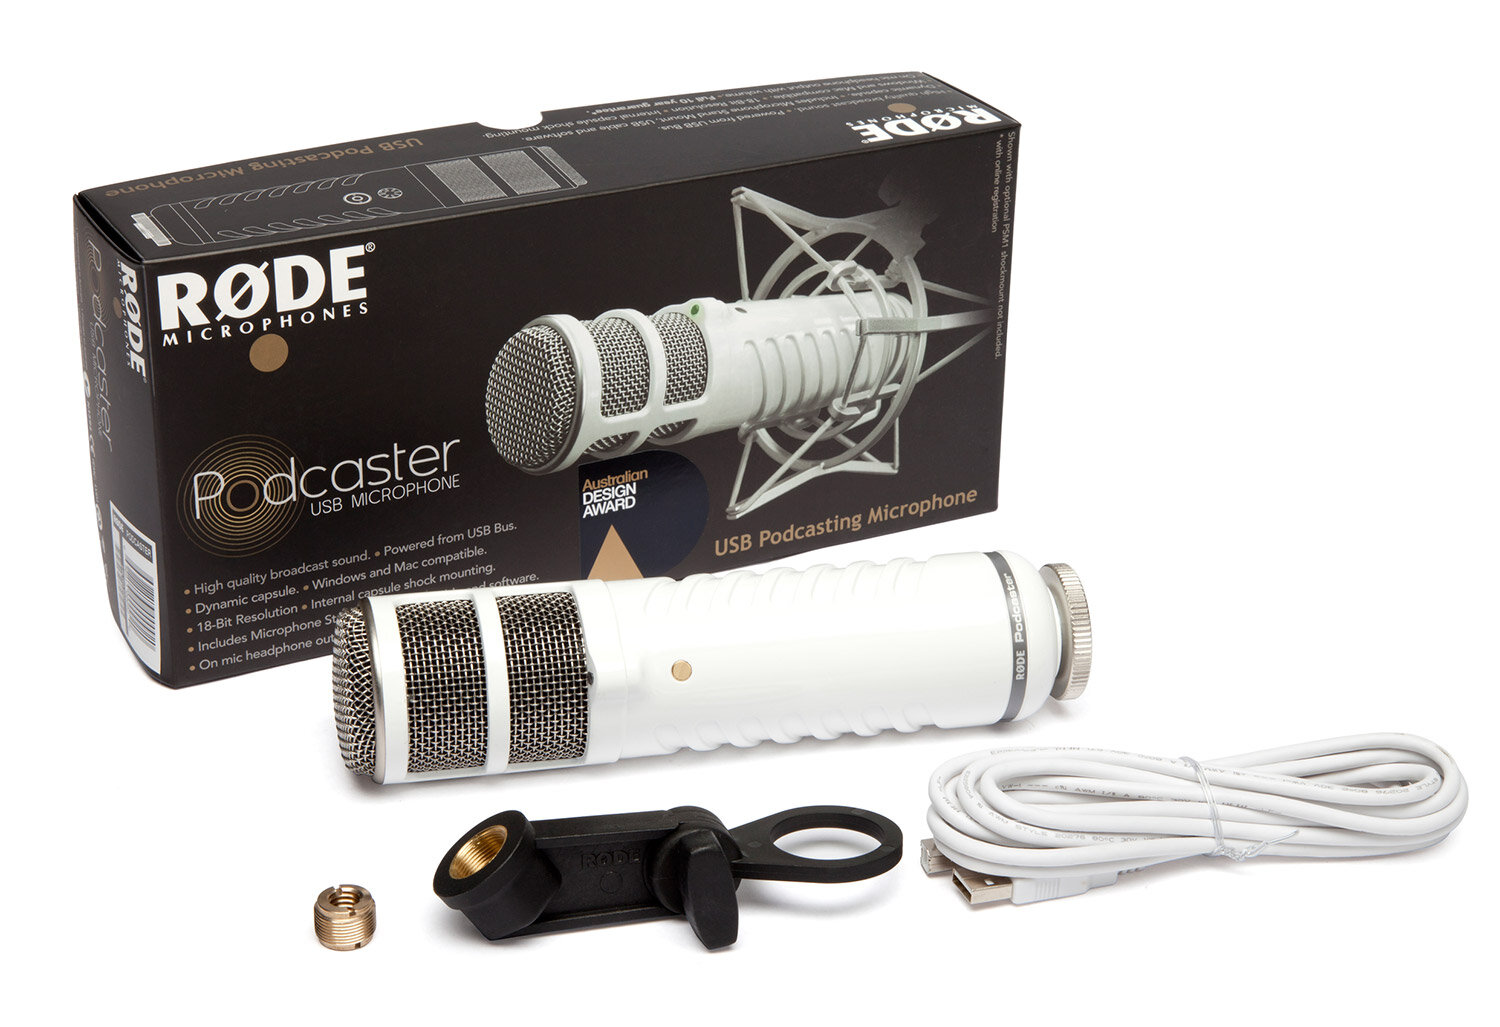 RODE Podcaster кардиоидный студийный USB-микрофон. 28мм динамический капсюль, AD разрешение 18бит /